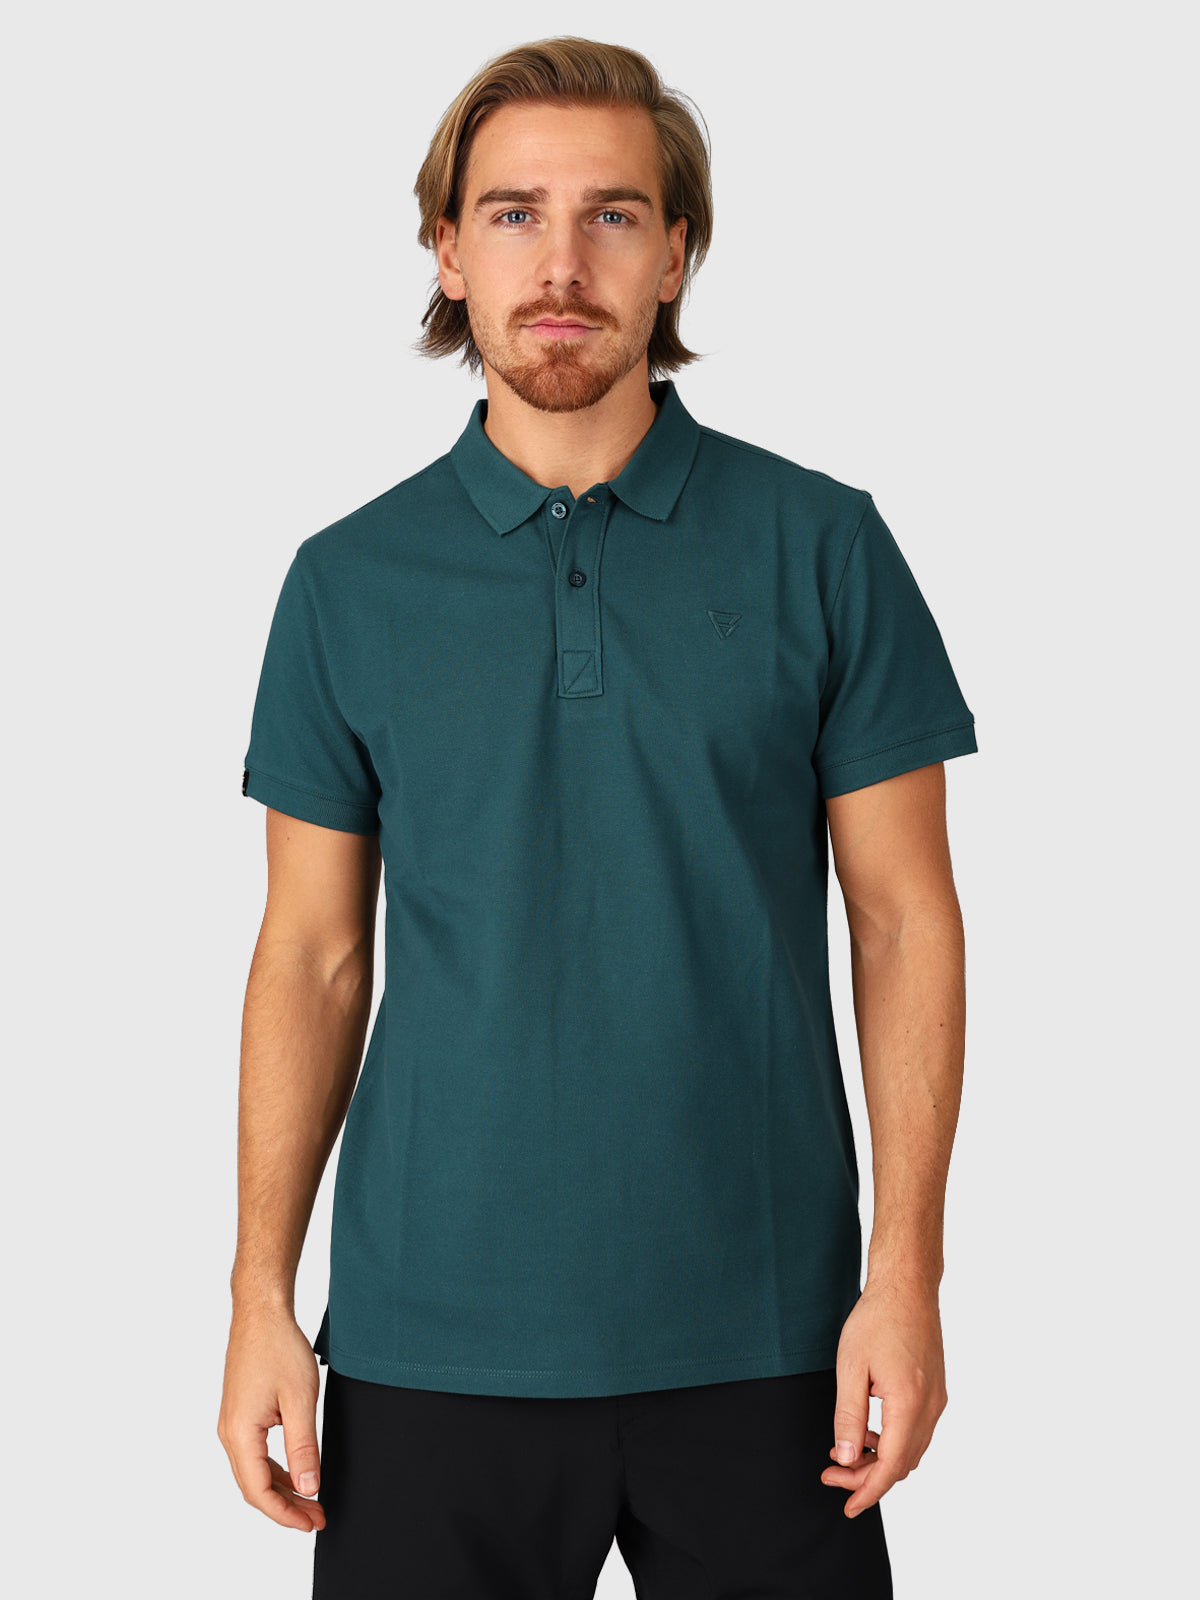 Frunot-II Herren Poloshirt | Grün